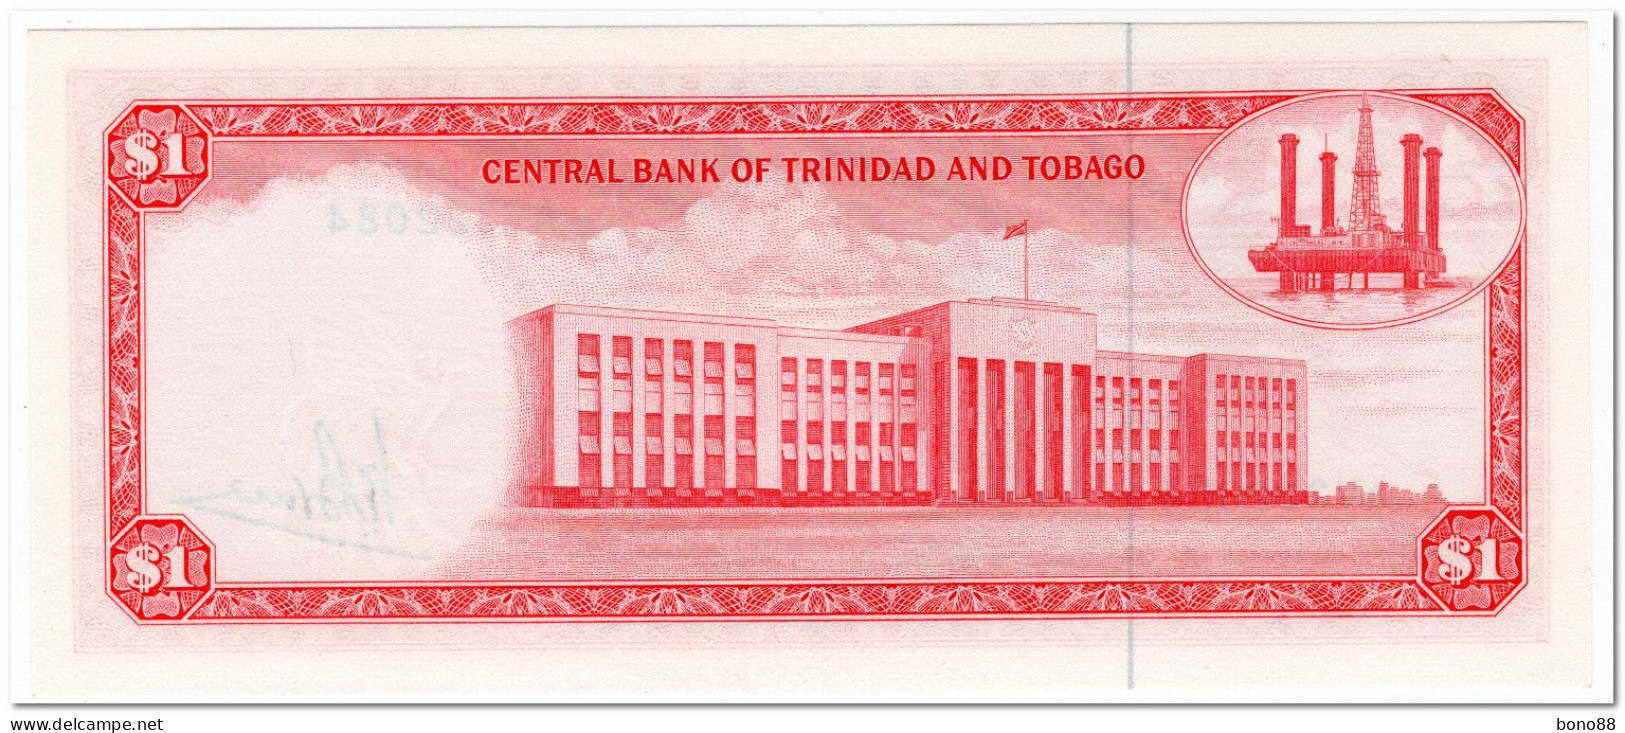 TRINIDAD & TOBAGO,1 DOLLAR,L.1964, (1977) P.30a,UNC - Trinidad & Tobago